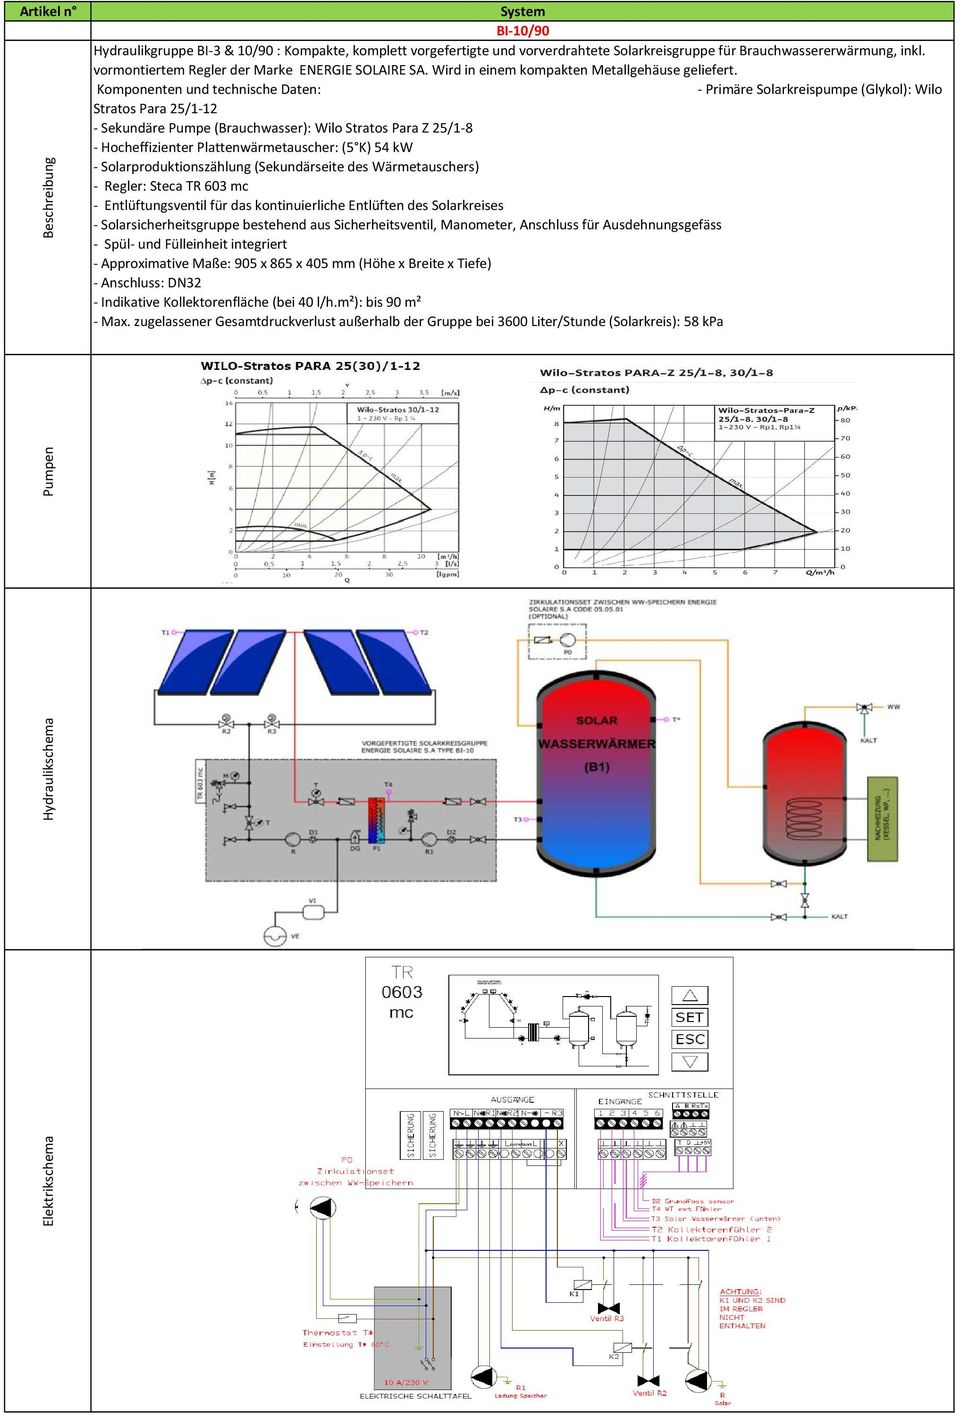 - Hocheffizienter Plattenwärmetauscher: (5 K) 54 kw - Solarproduktionszählung (Sekundärseite des Wärmetauschers) - Approximative Maße: 905 x 865 x